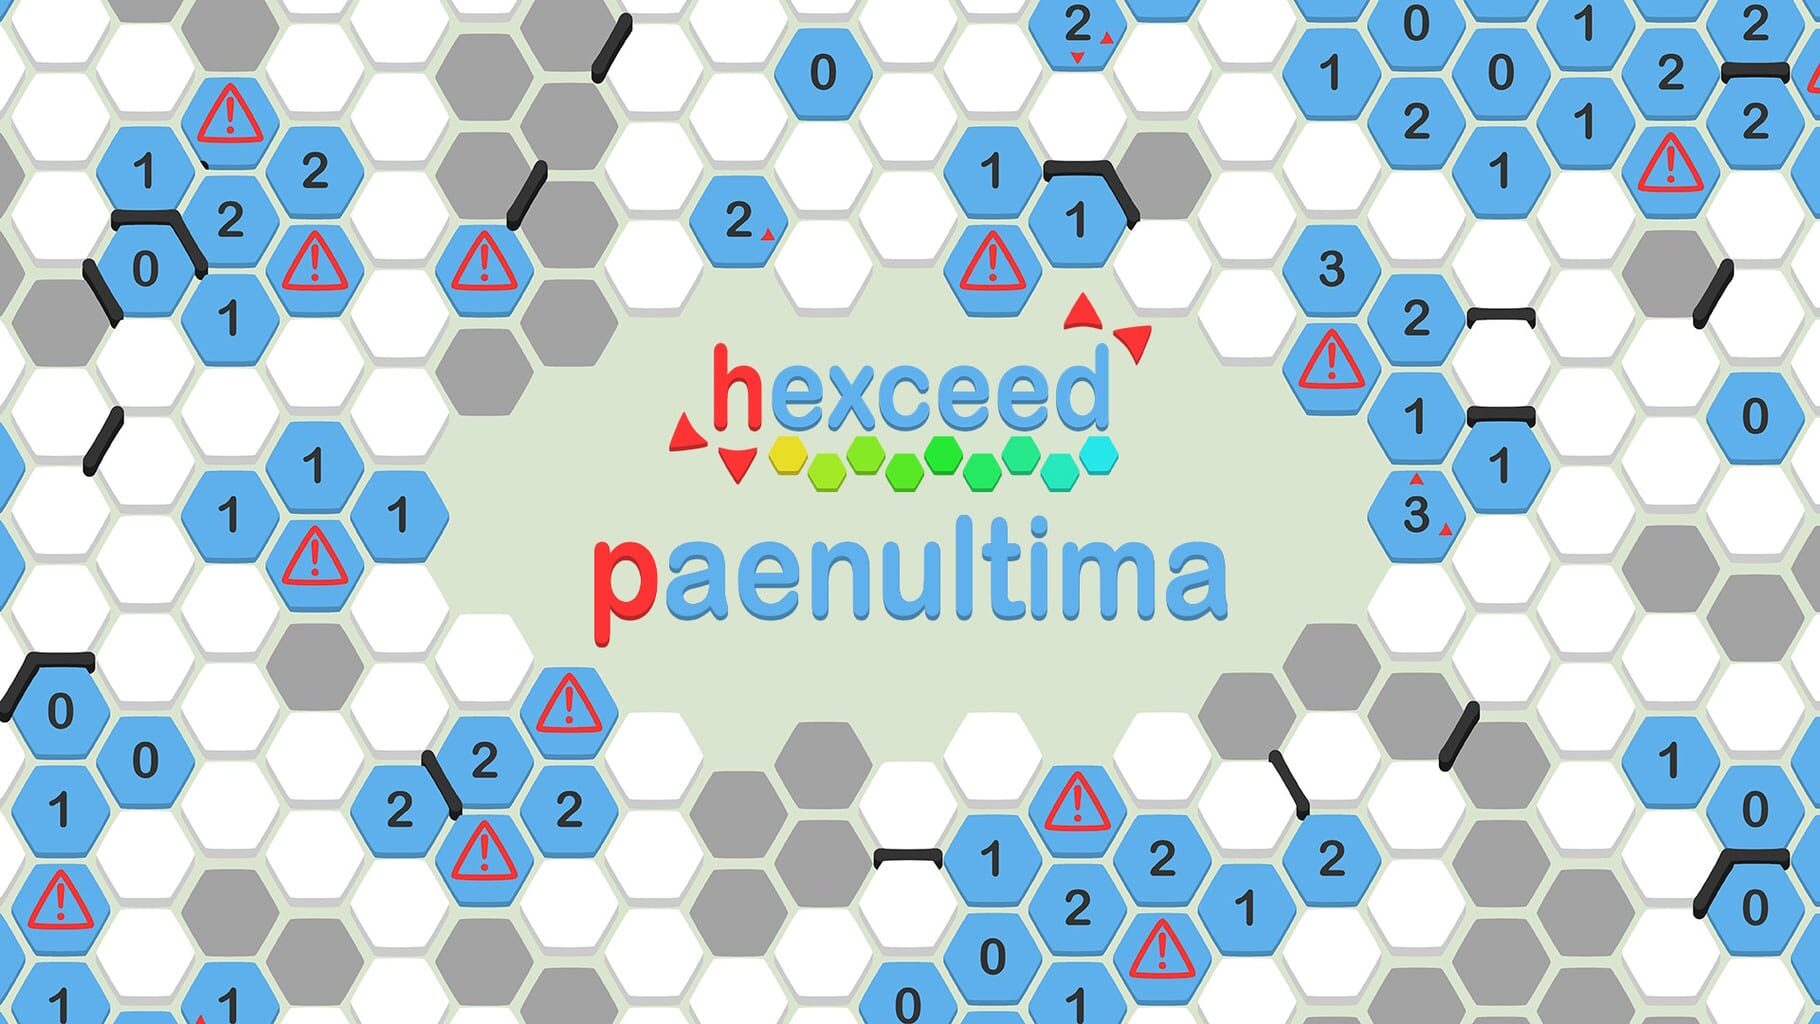 Arte - Hexceed: Paenultima